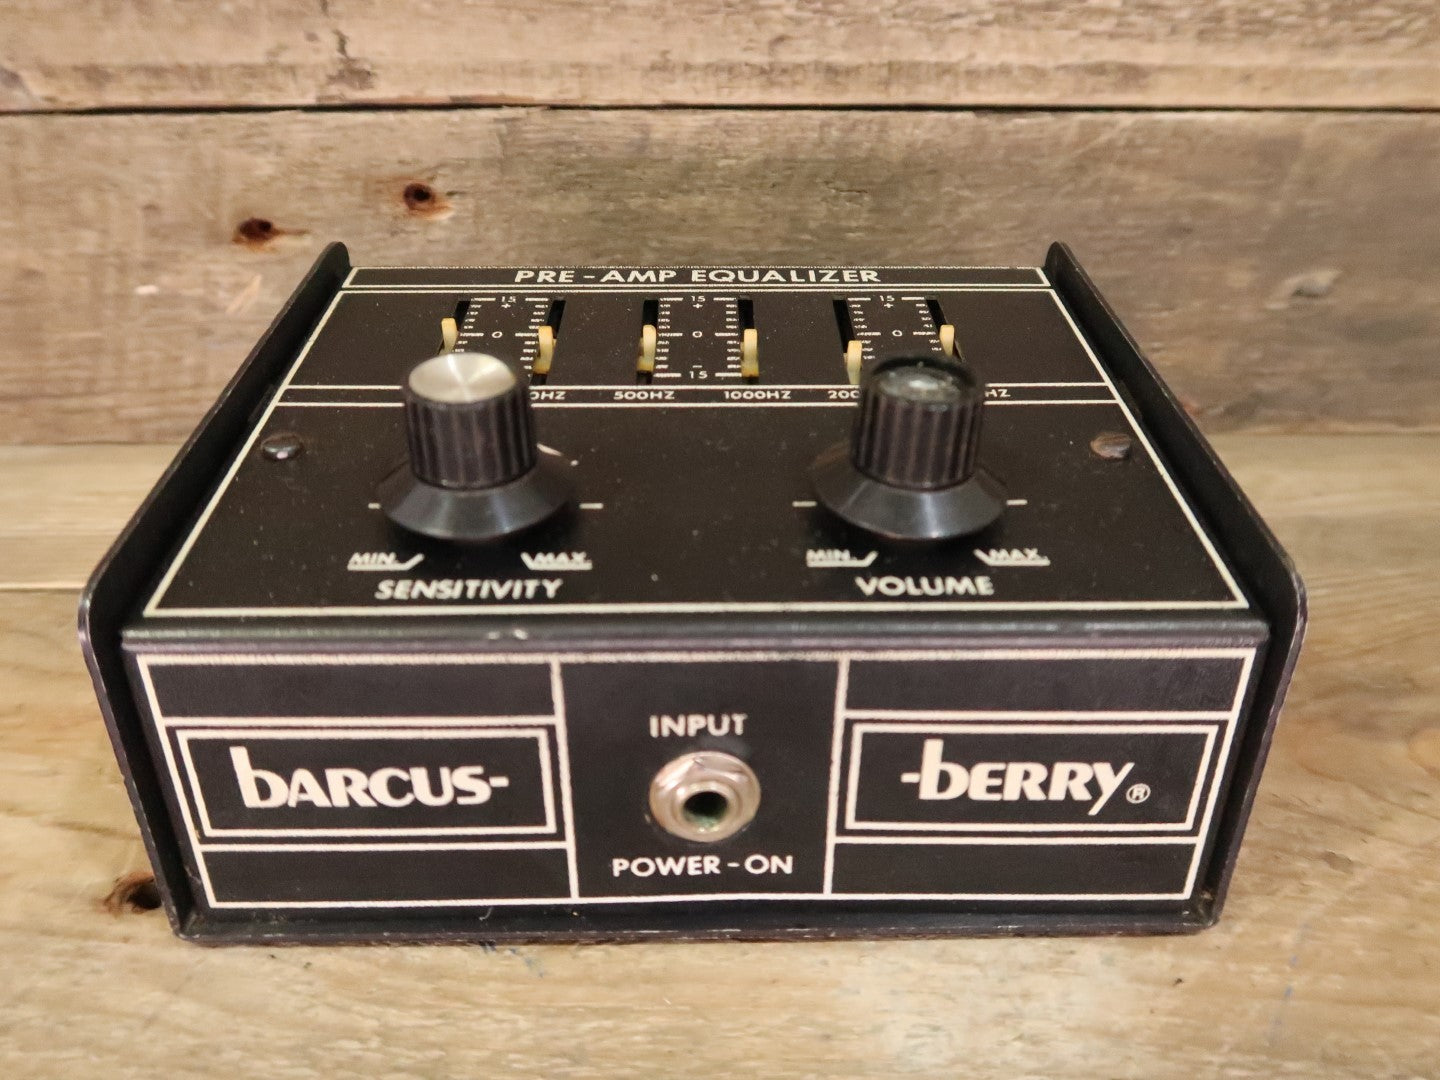 Barcus-Berry Pre-Amp Equalizer Model 1335 (Vintage, 18V)